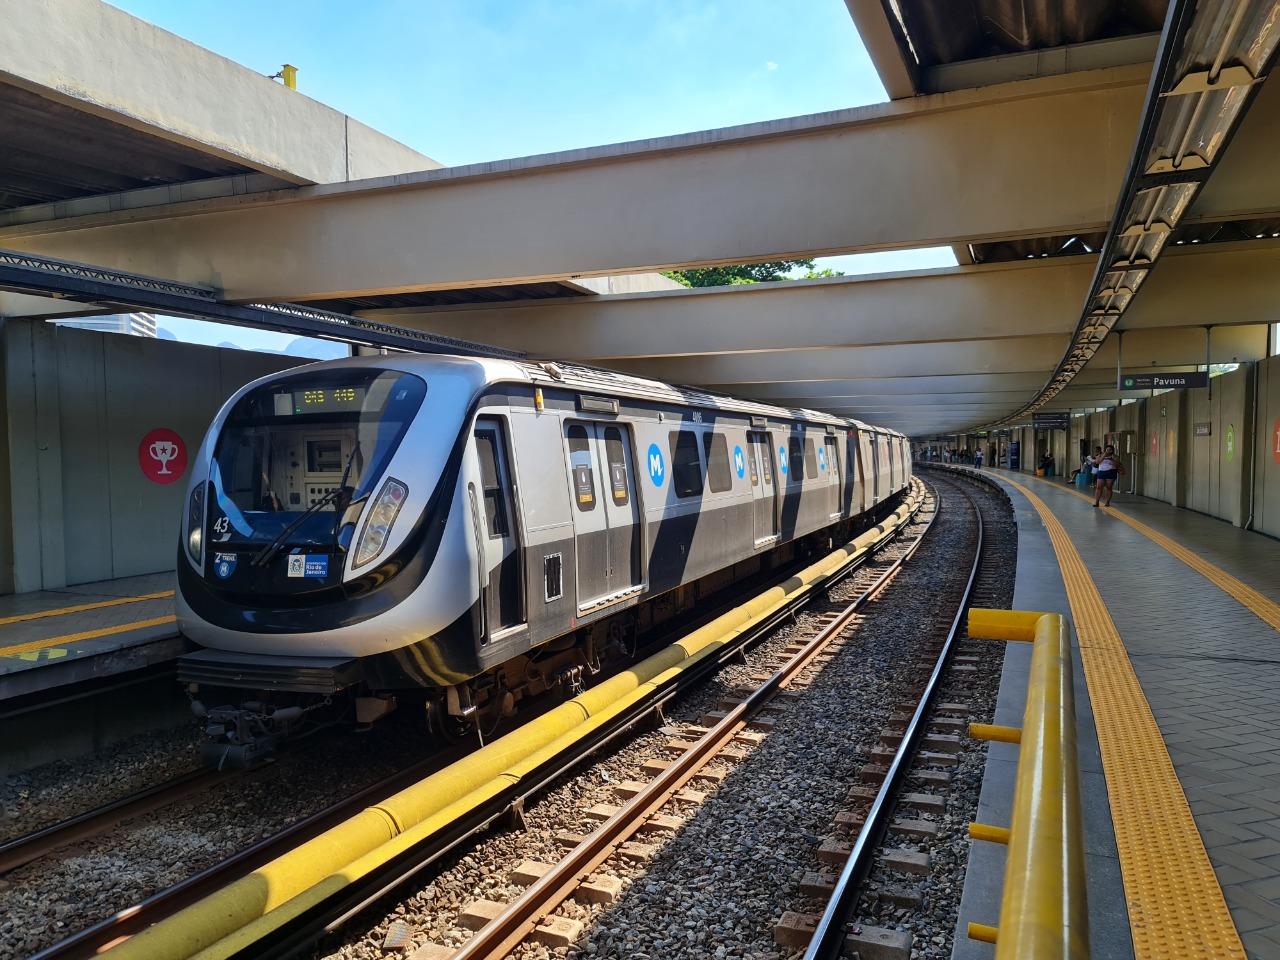 No Dia Mundial Sem Carro, MetrôRio distribui passagens gratuitas para os cariocas